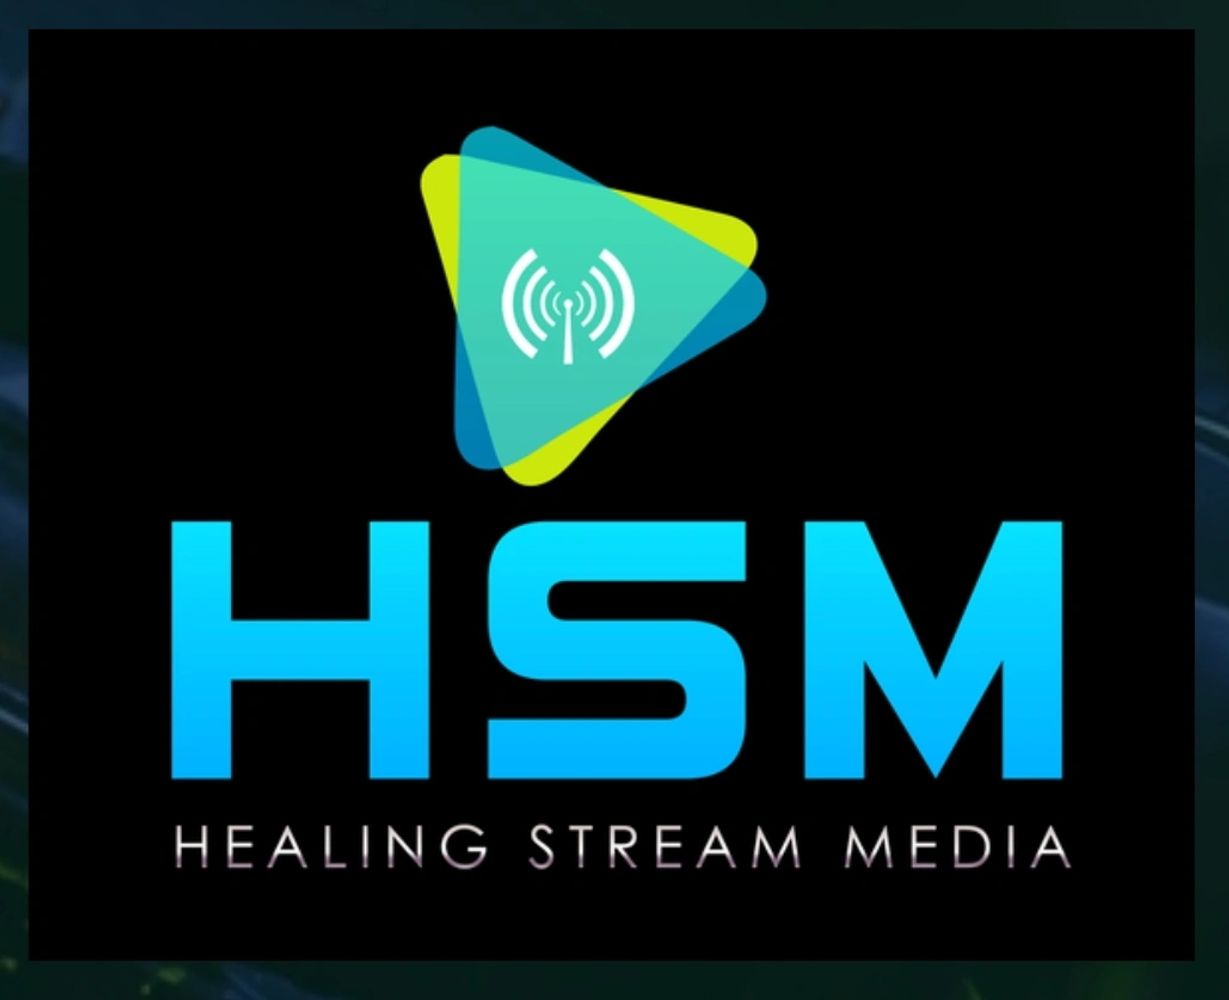 HSM Main Logo